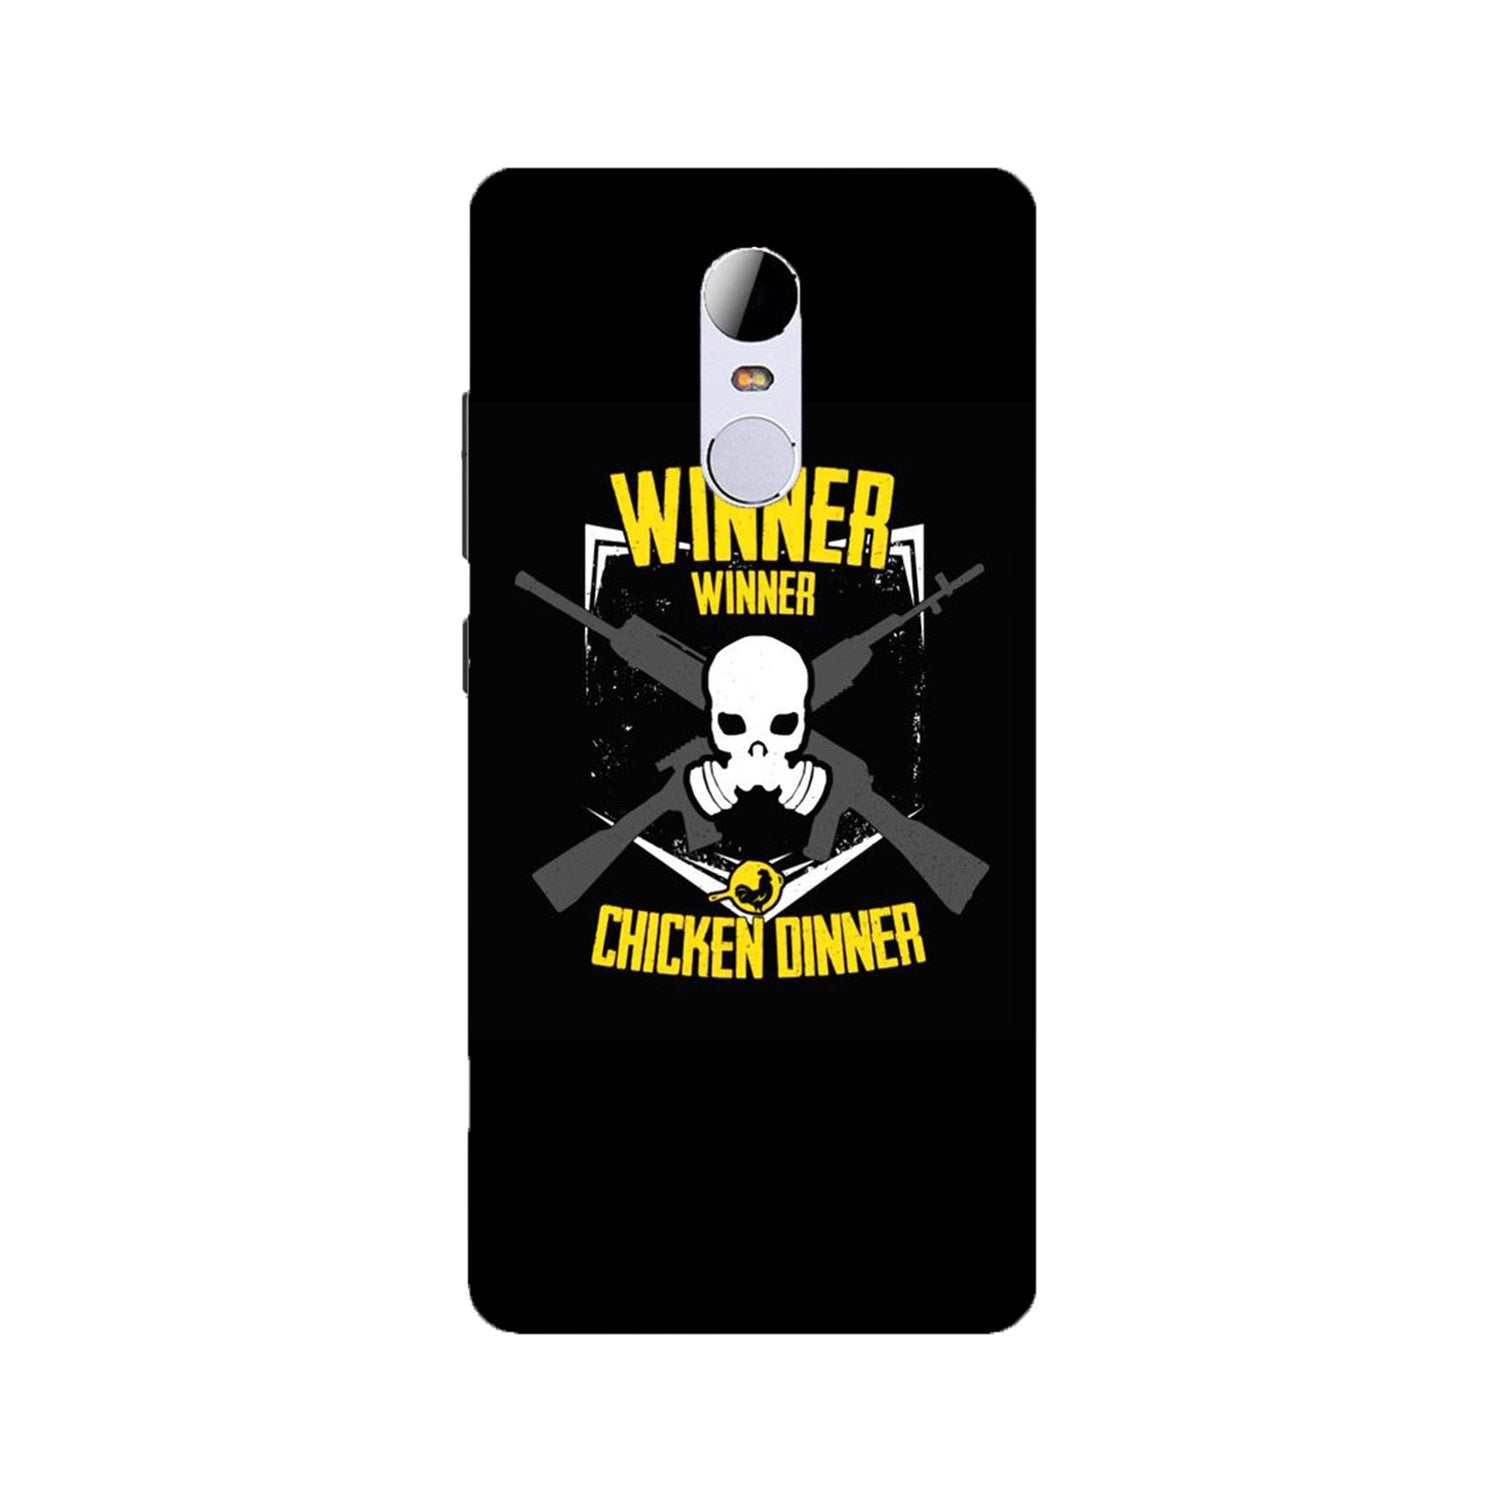 Winner Winner Chicken Dinner Case for Redmi Note 4(Design - 178)